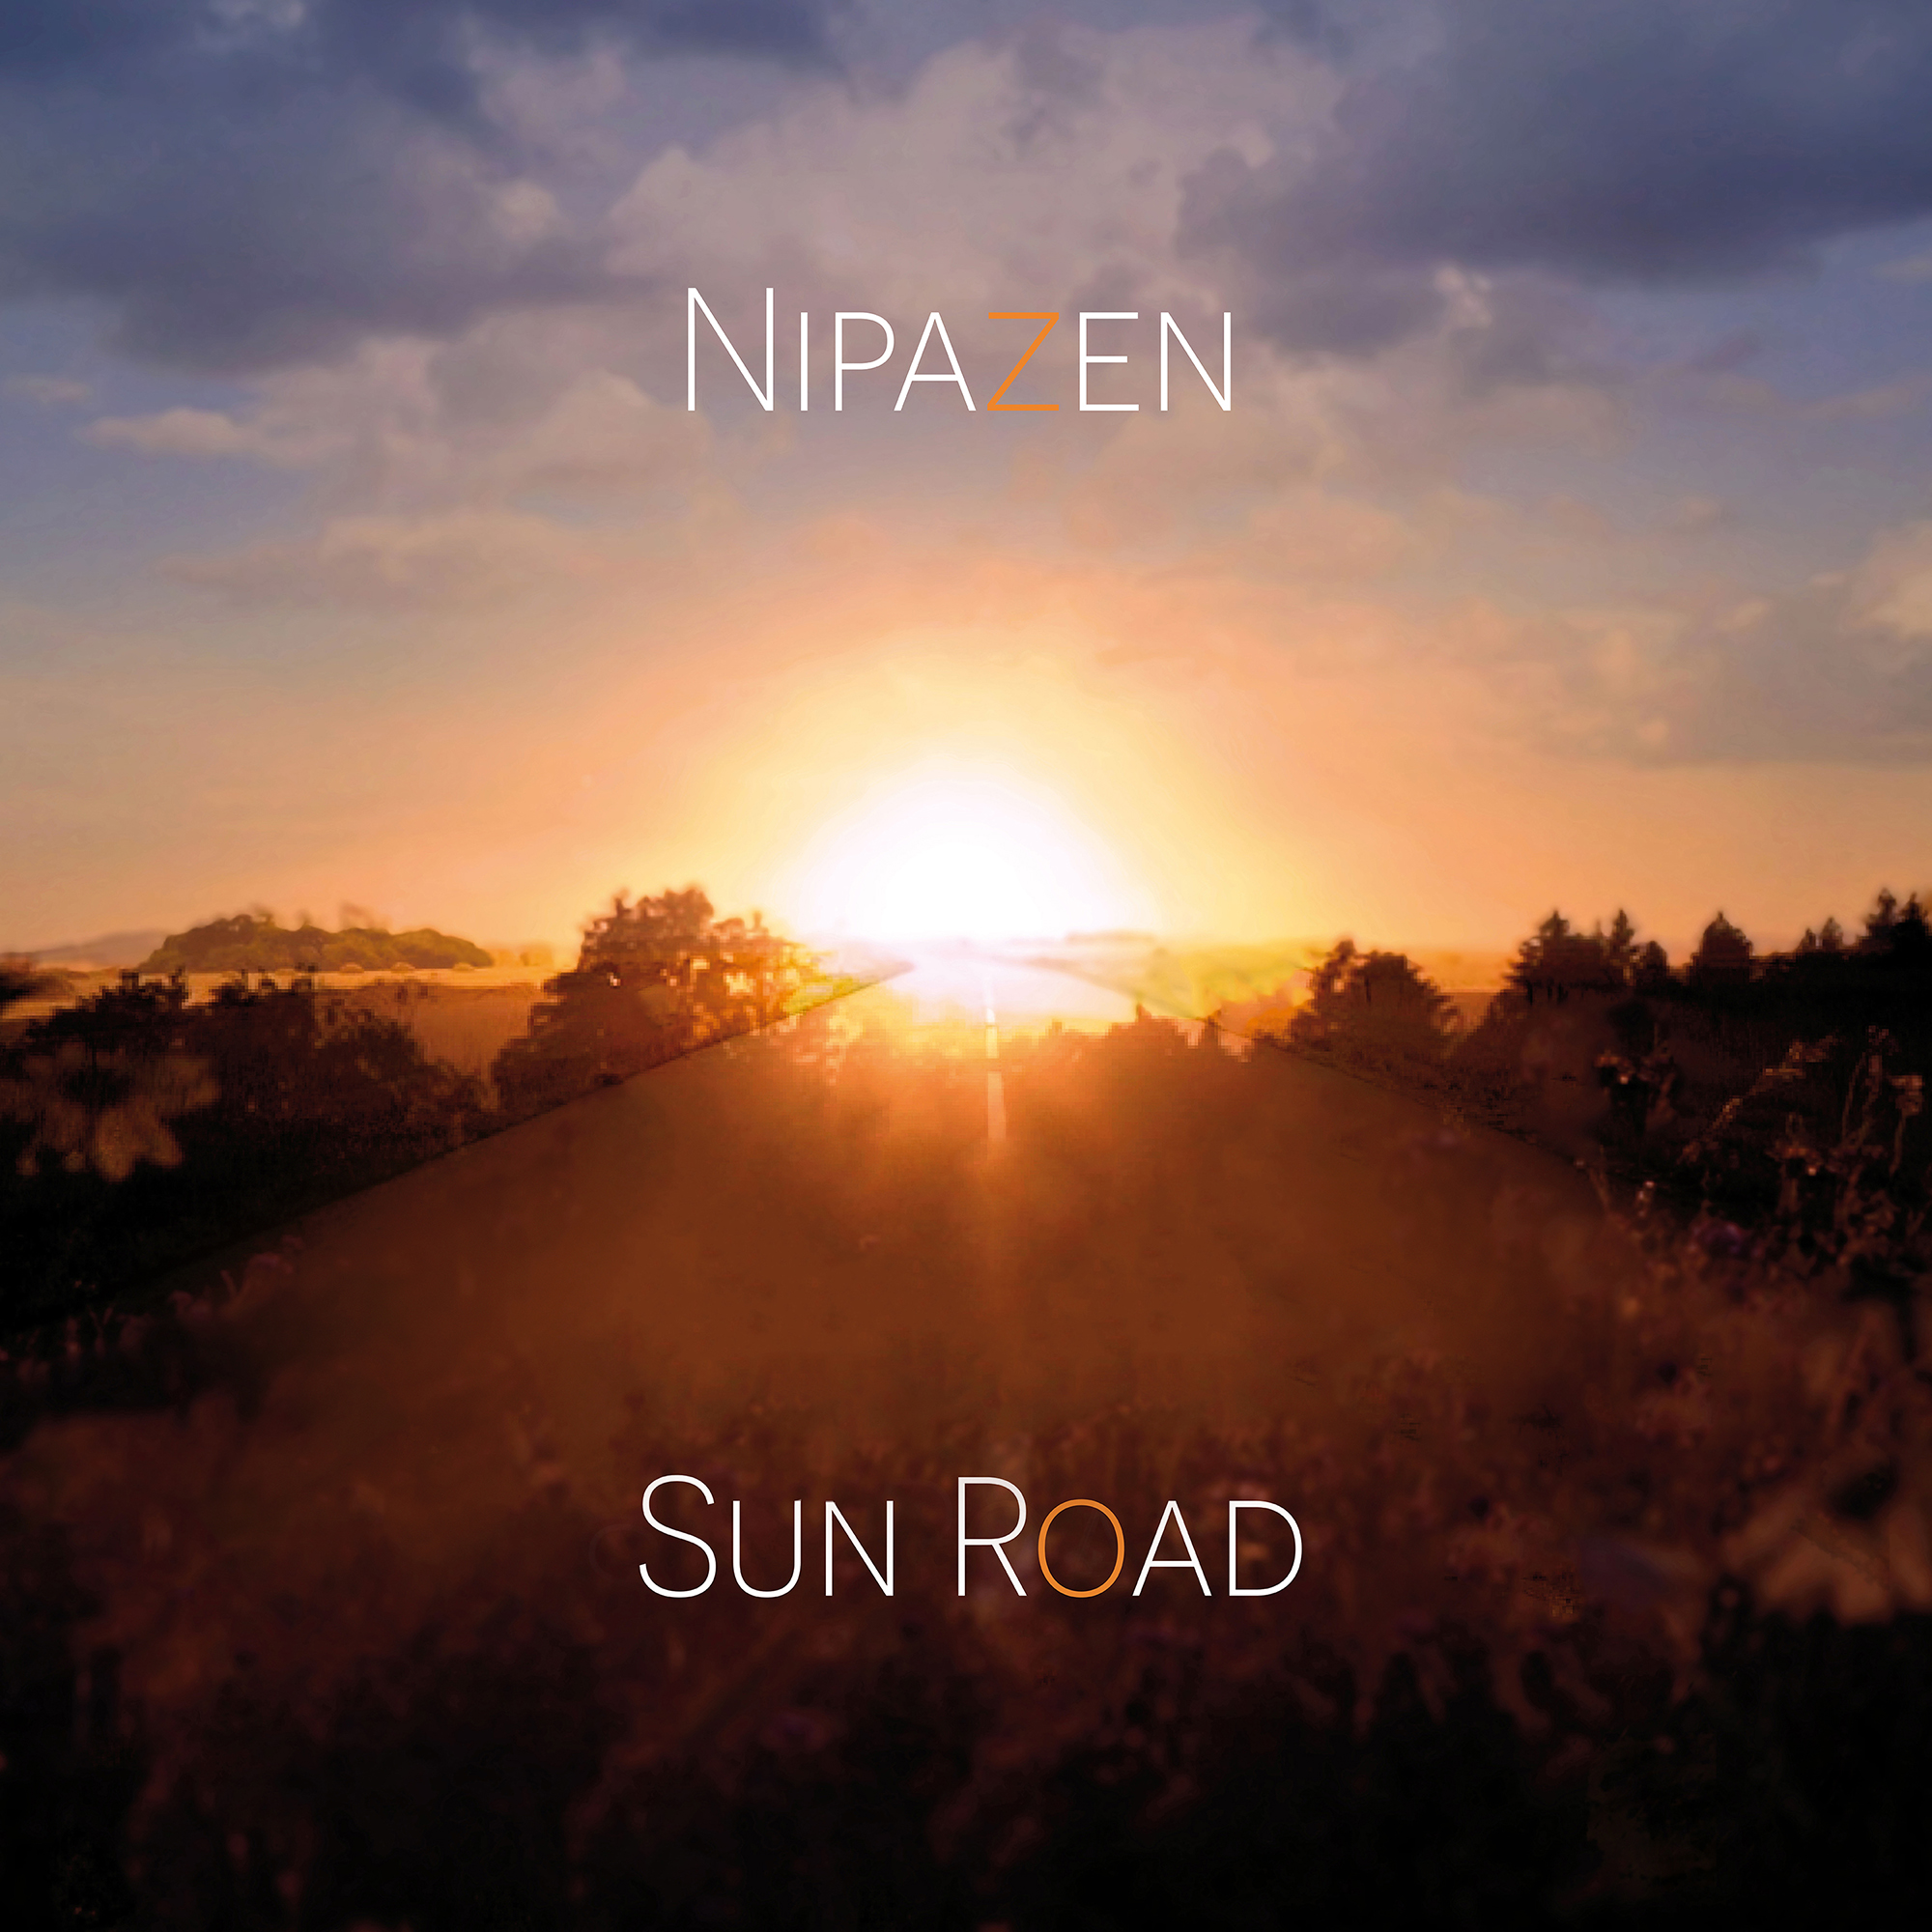 Nipazen - Sun Road - single cover